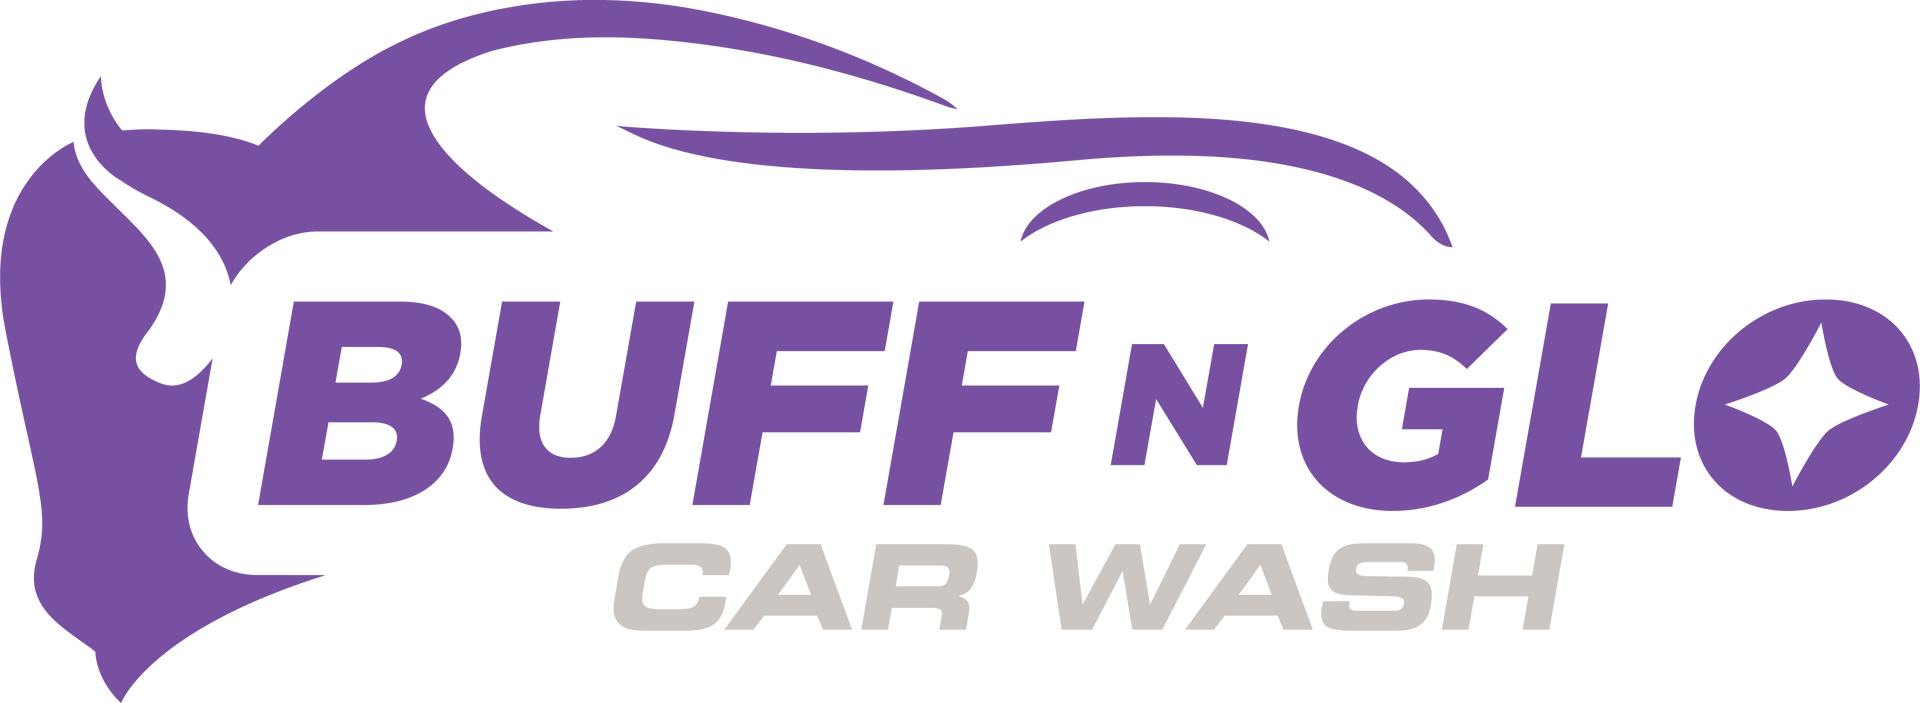 Buff N Glo Car Wash - logo